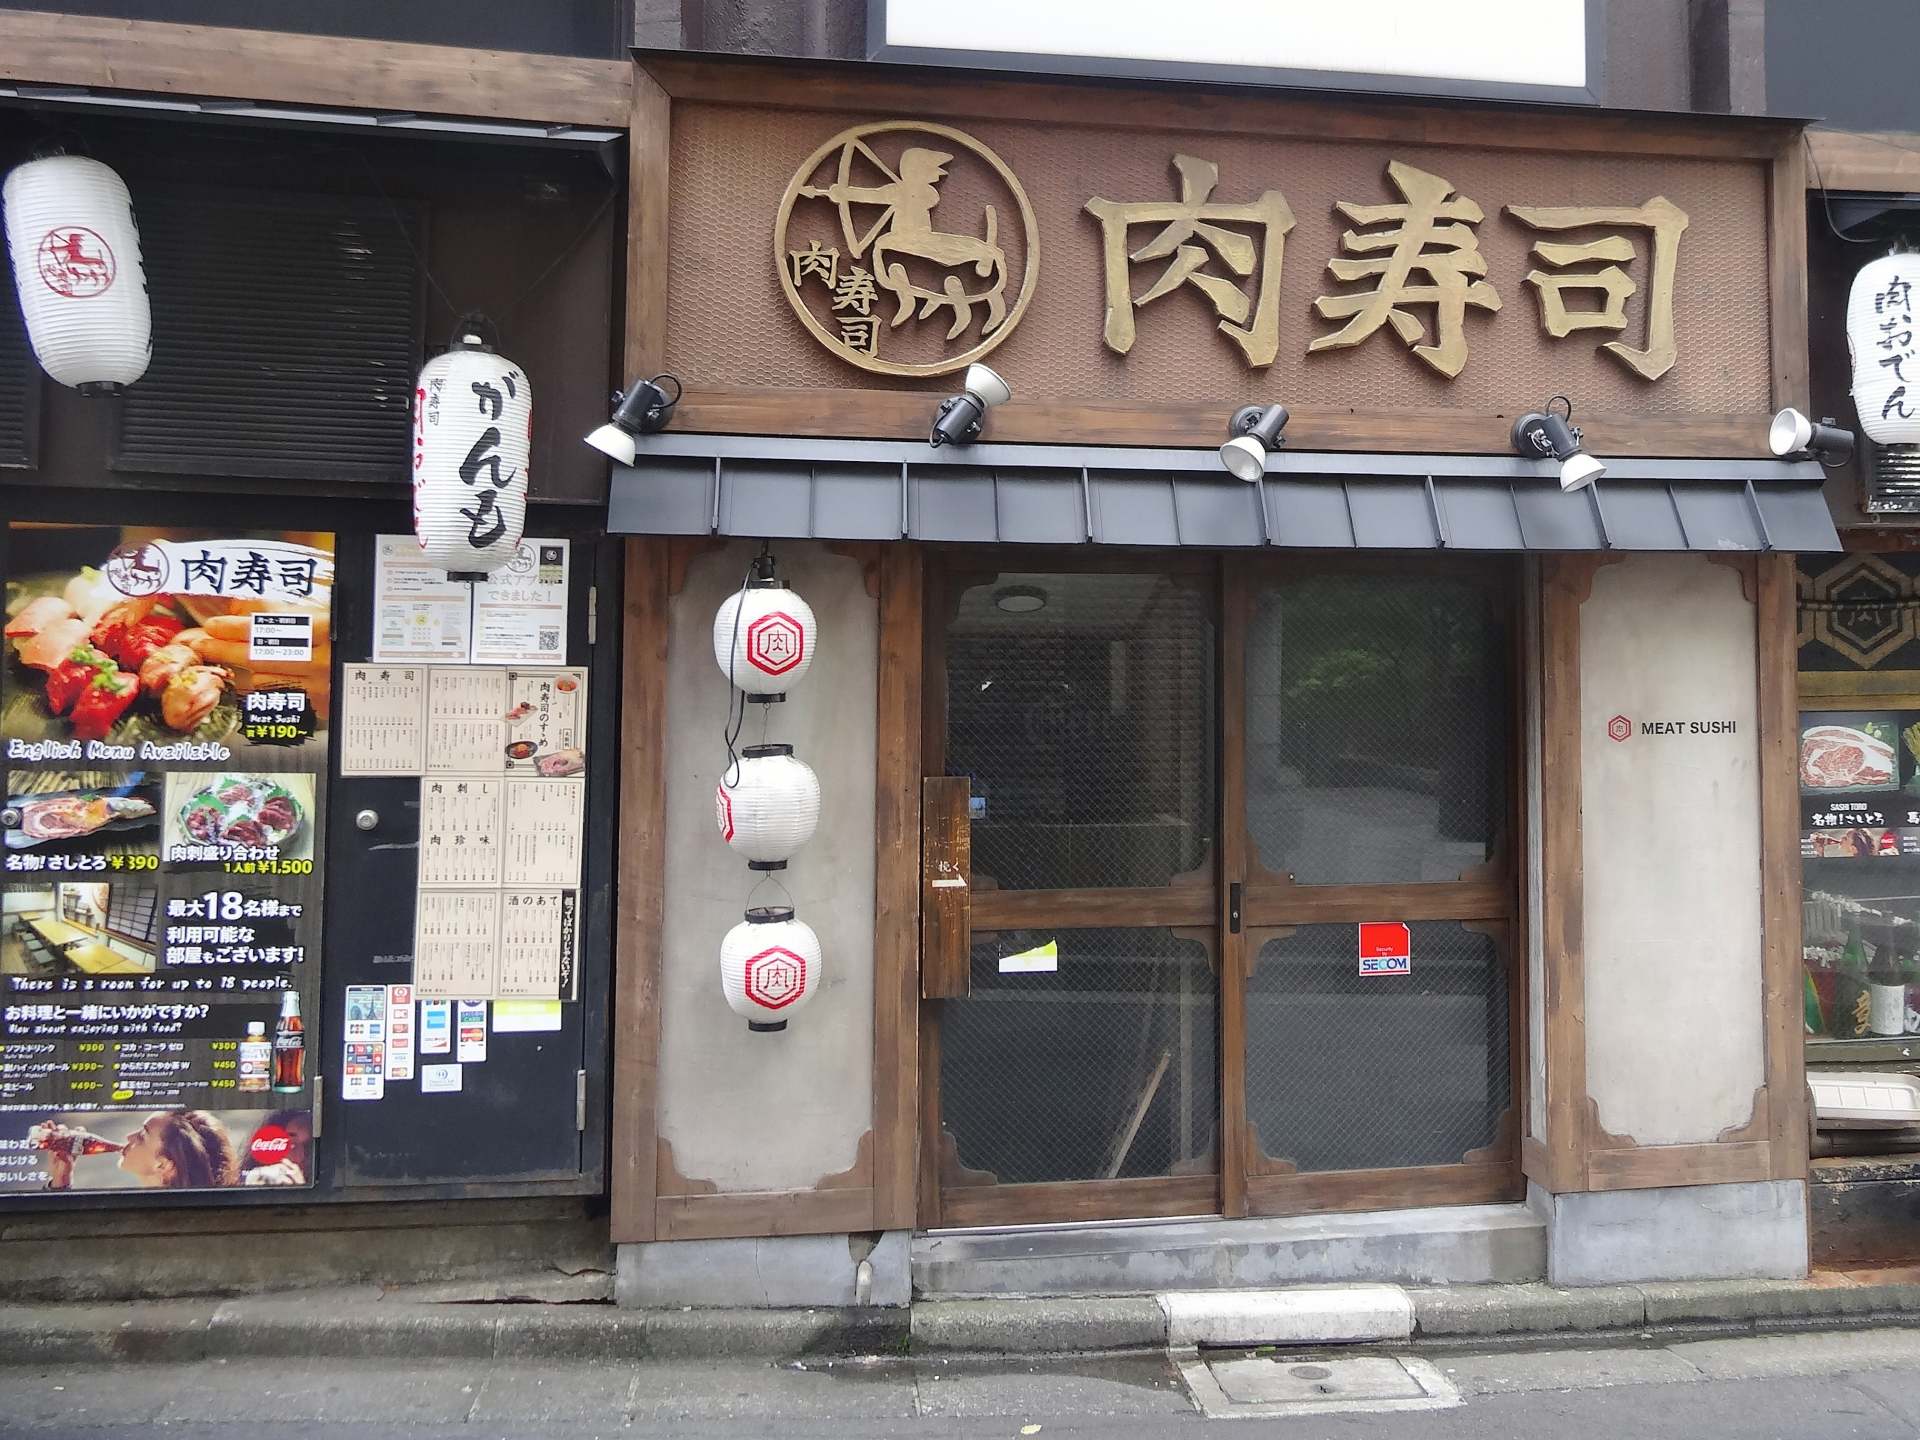 肉寿司 六本木店 美食指南 午晚餐预算 交通 周边景点资讯 好运日本行